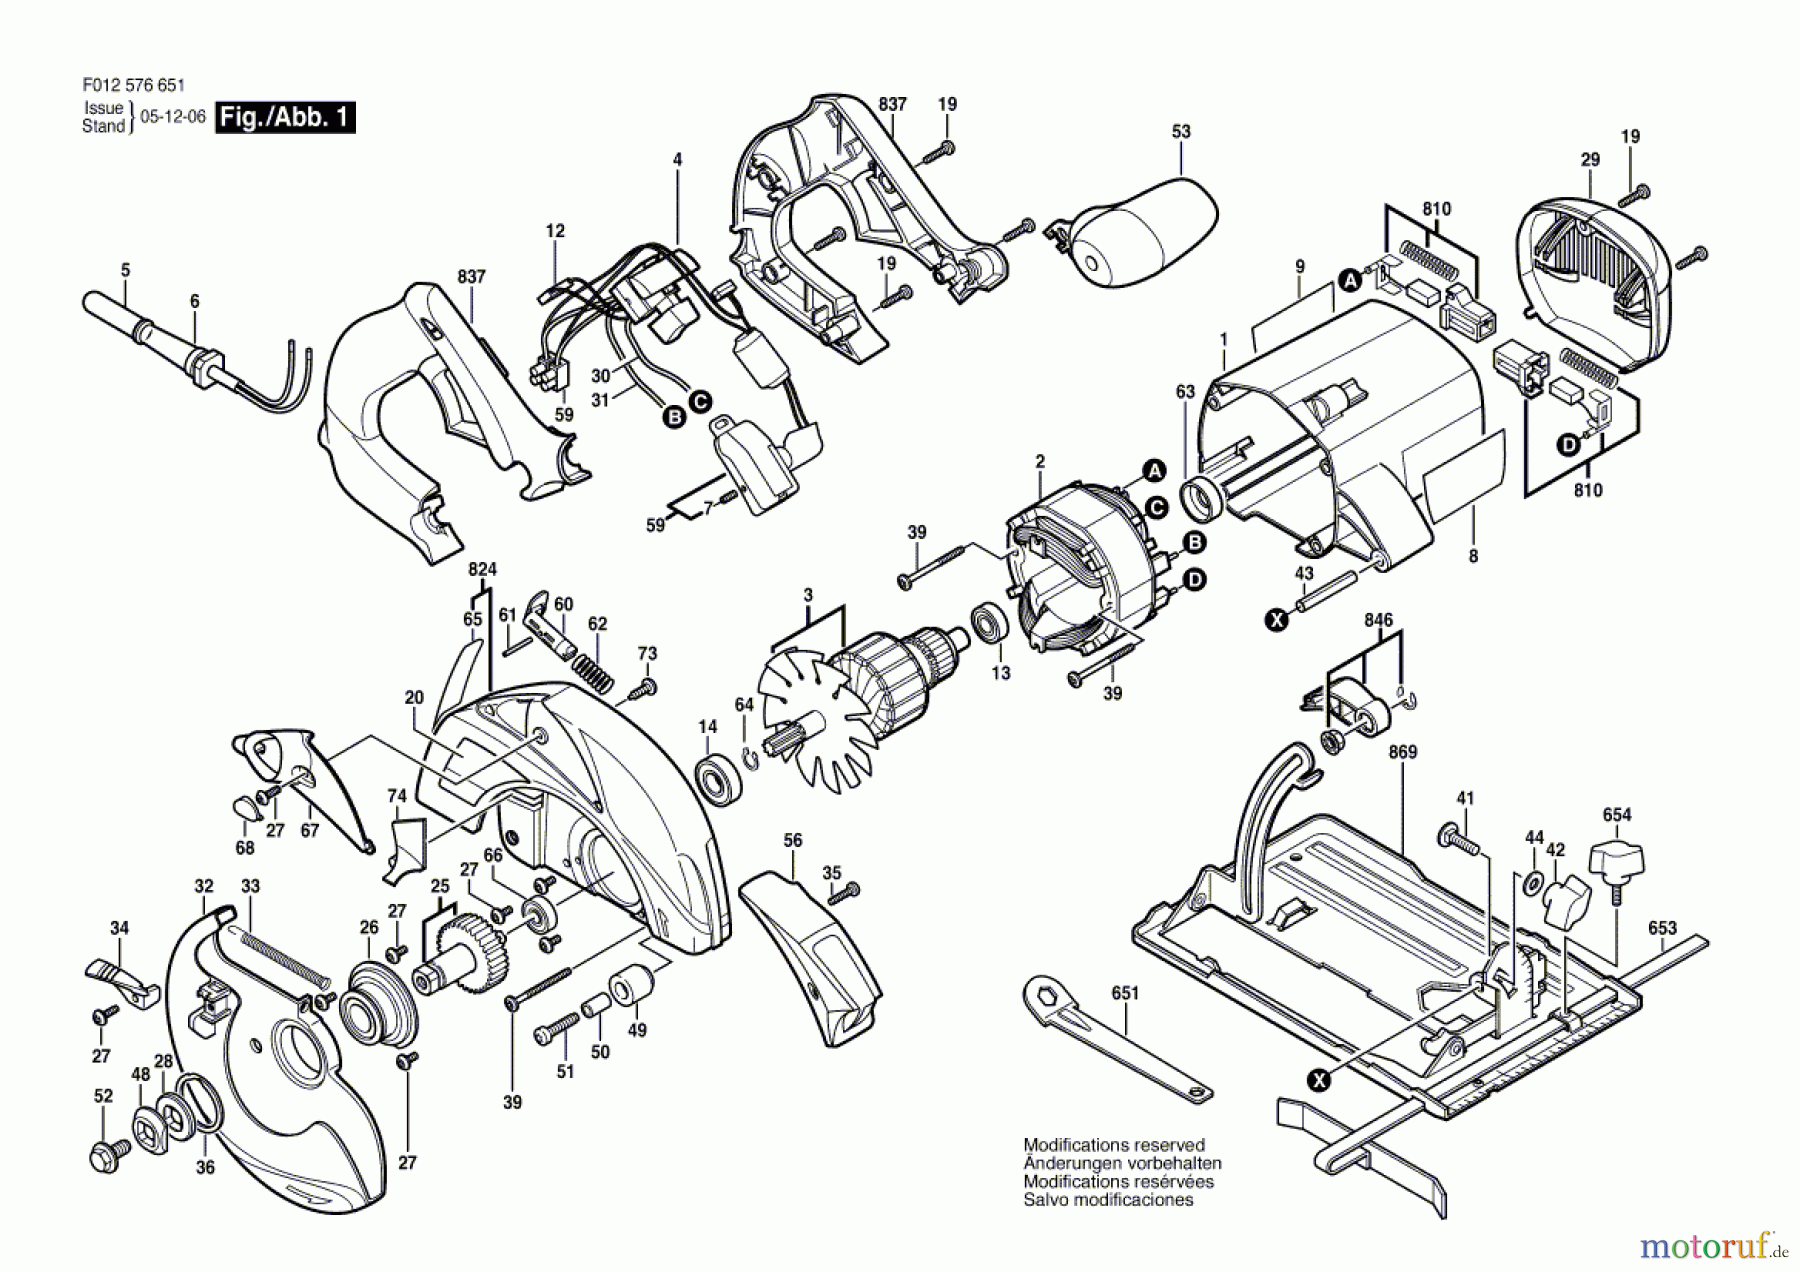  Bosch Werkzeug Handkreissäge 5766 Seite 1